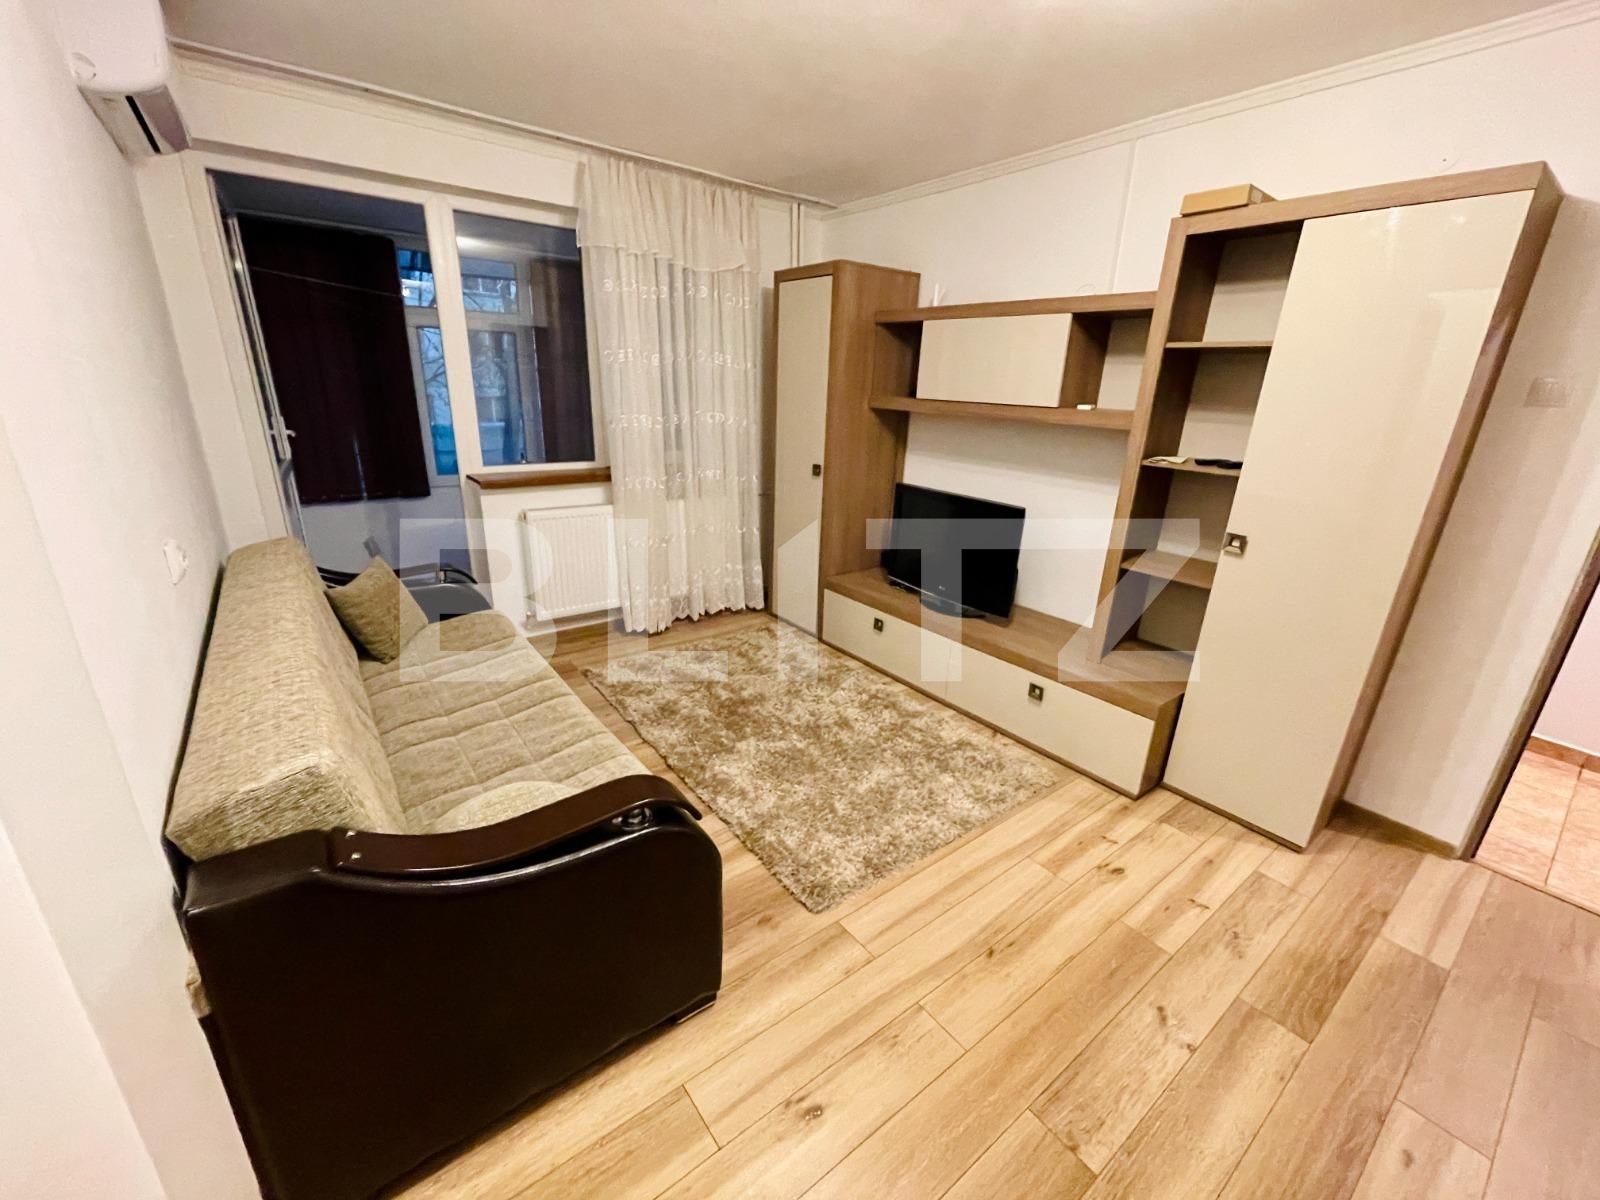 Apartament 2 camere, la prima inchiriere, Calea Bucuresti